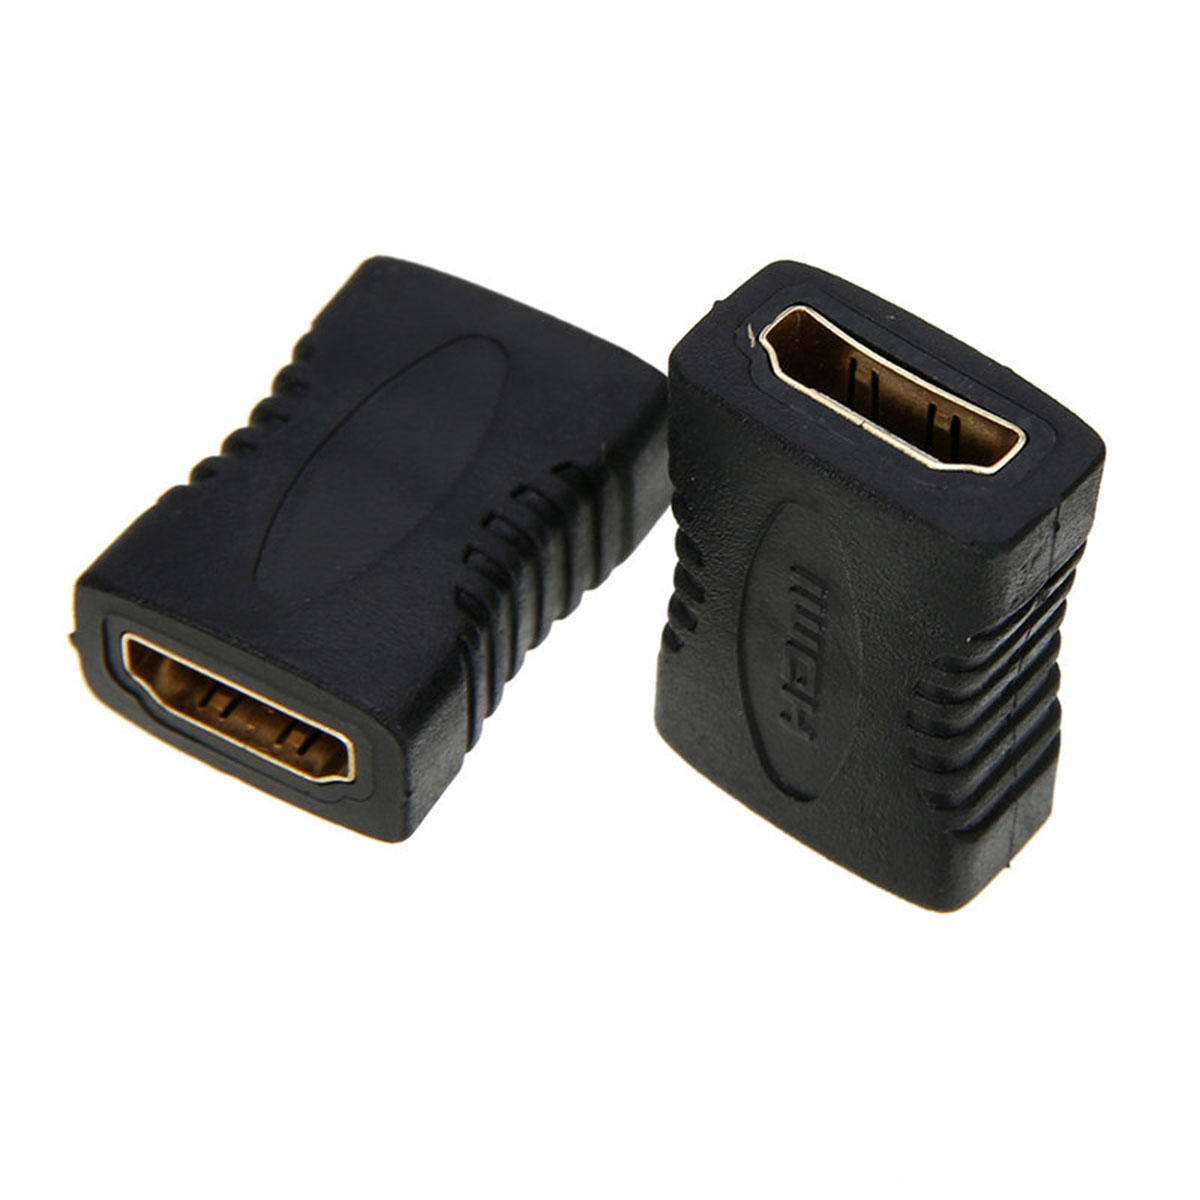 Переходник соединитель HDMI F-F, HDMI (F) мама - HDMI (F) мама, Premier 5-891G, цвет черный.